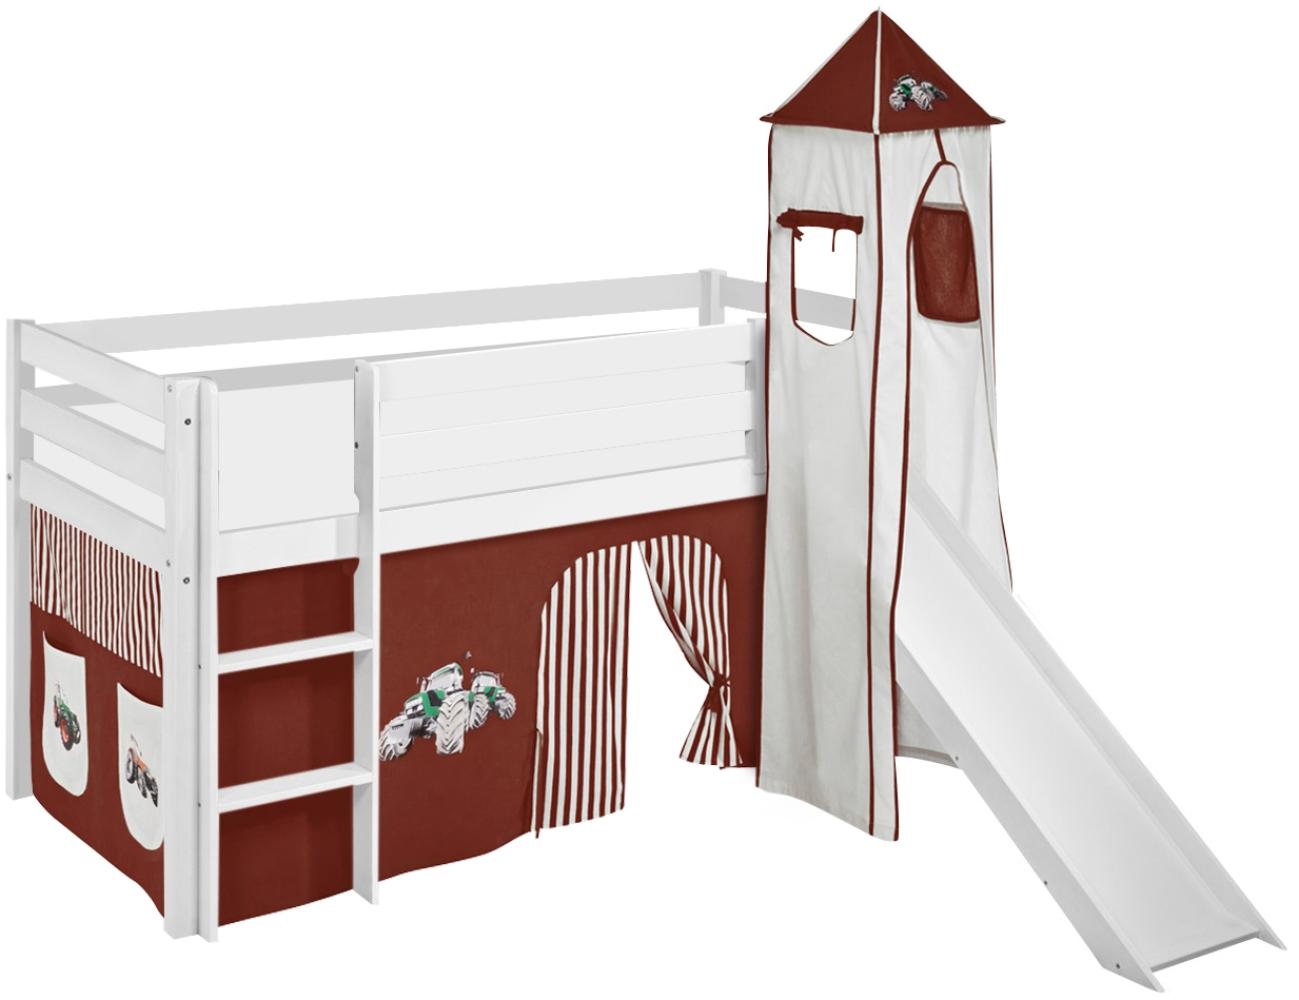 Lilokids 'Jelle' Spielbett 90 x 190 cm, Trecker Braun Beige, Kiefer massiv, mit Turm, Rutsche und Vorhang Bild 1